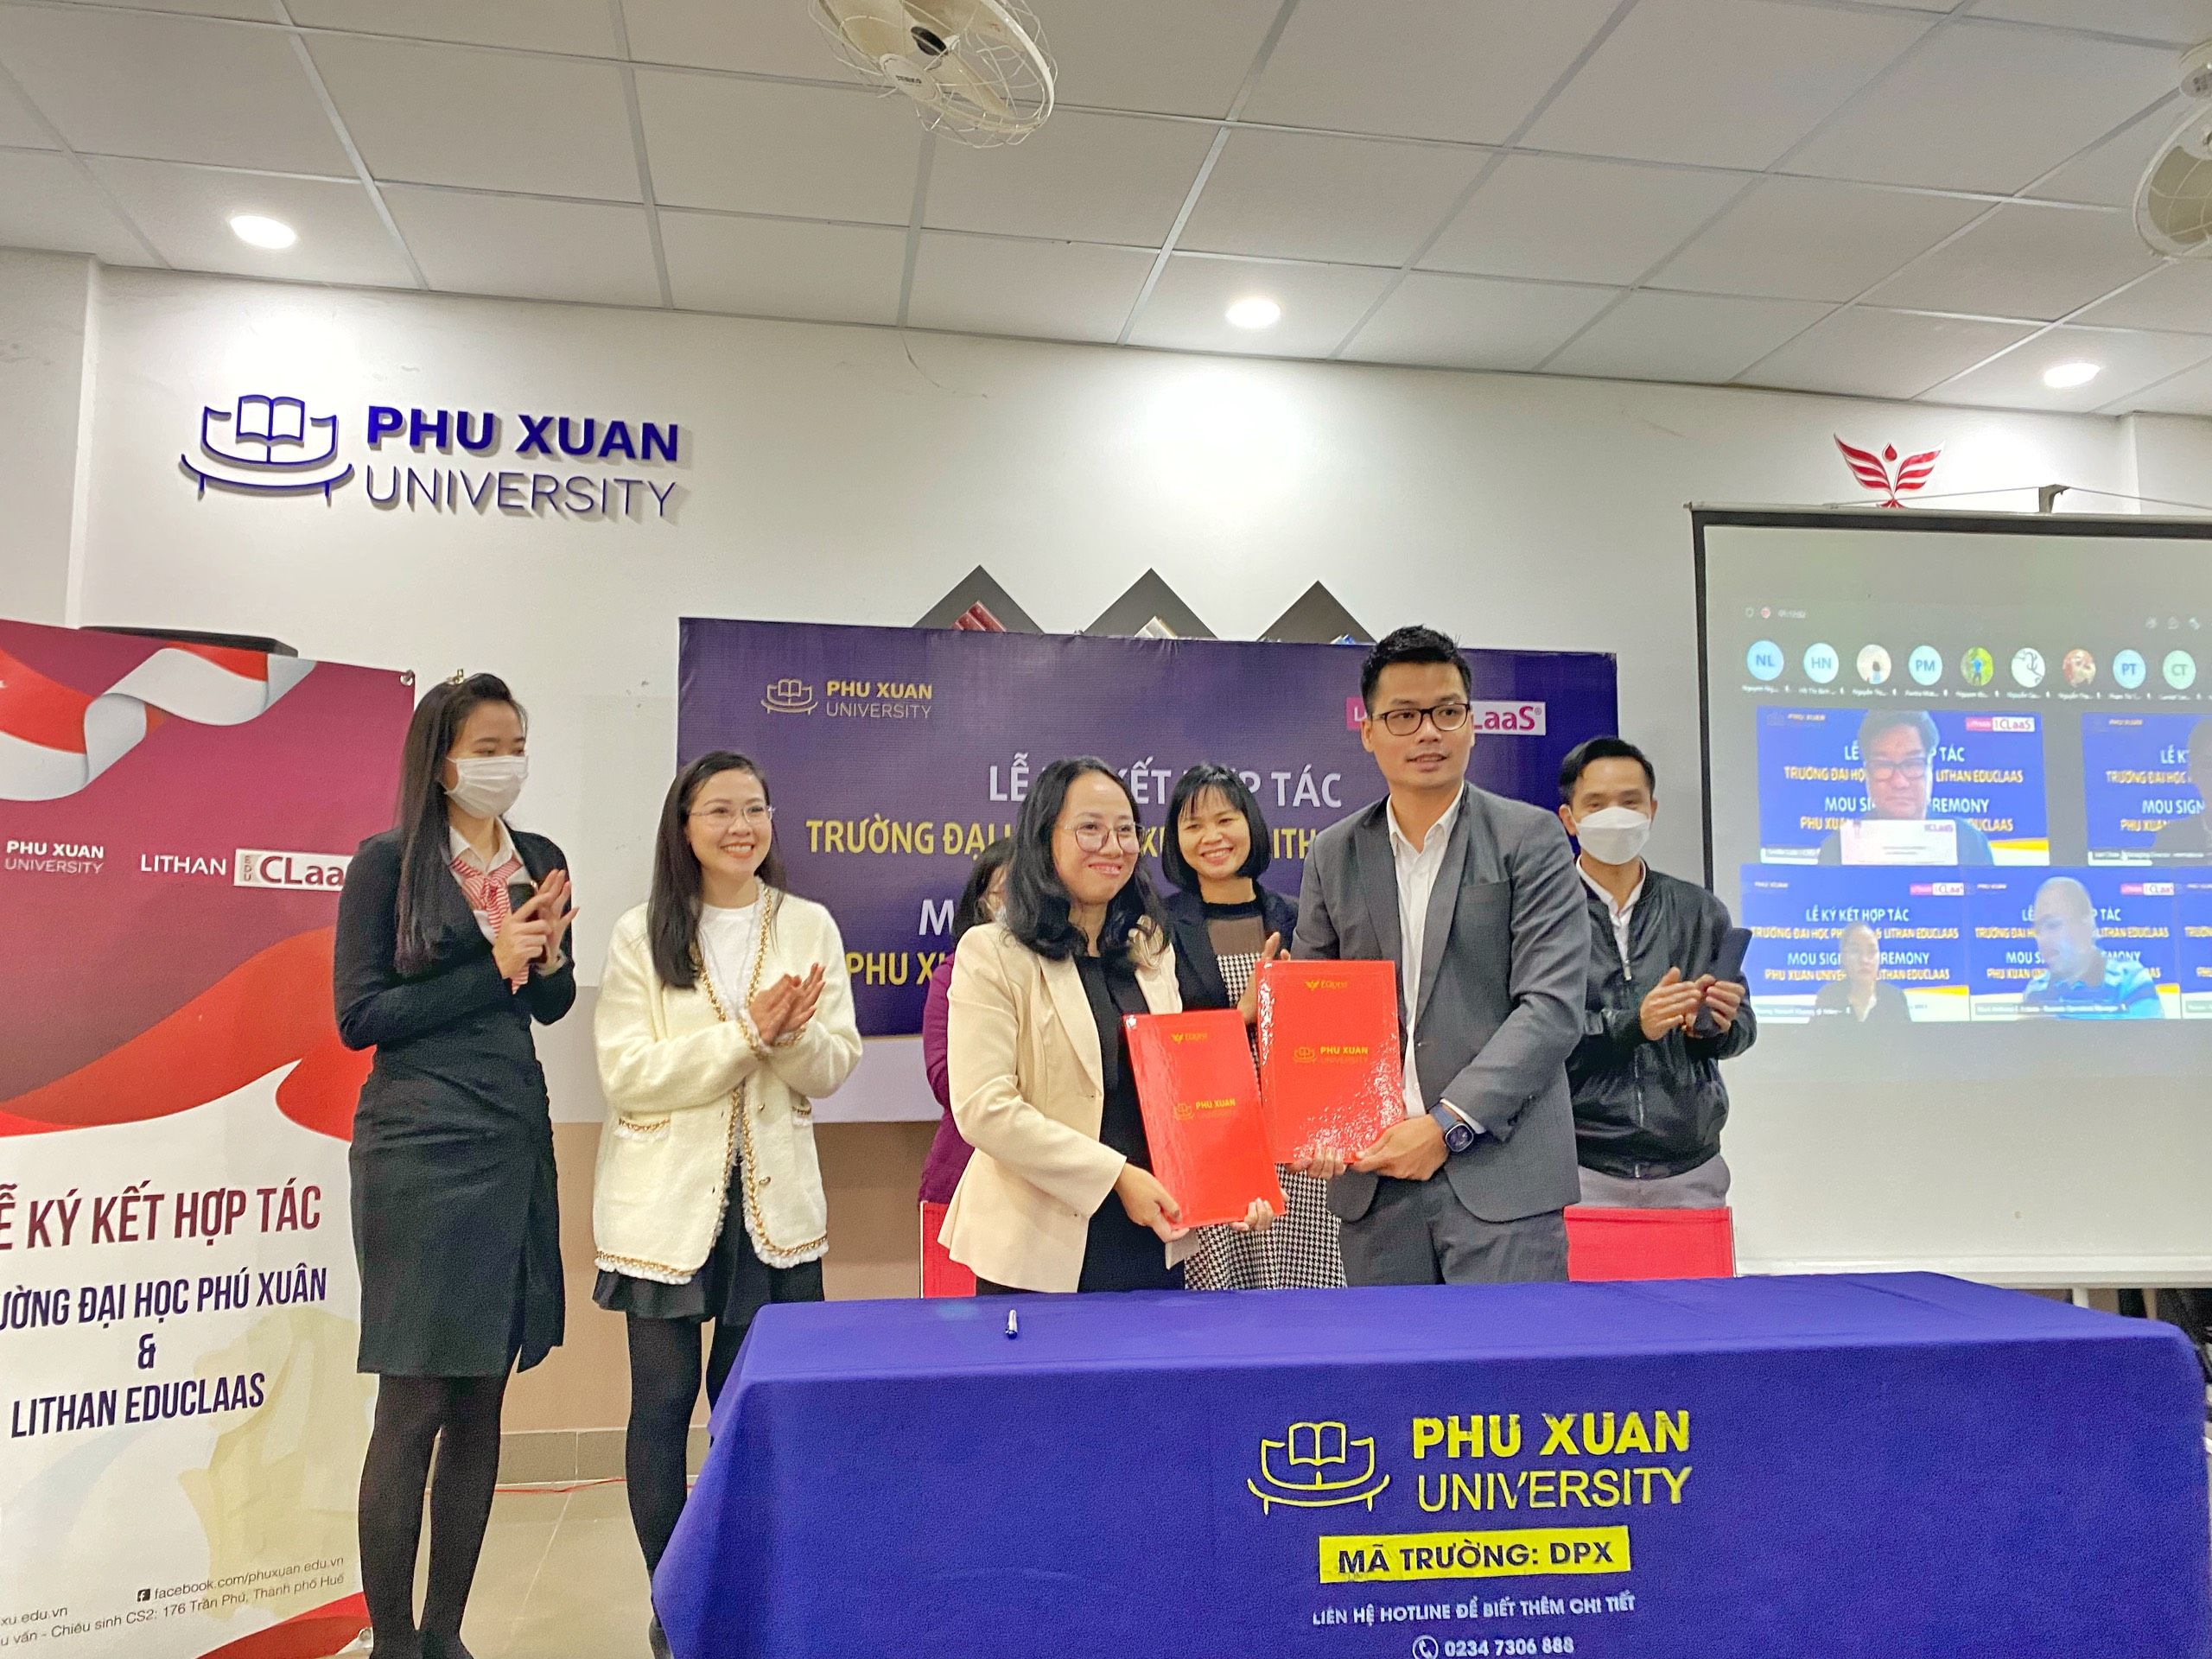 Trường Đại học Phú Xuân hướng ký kết hợp tác với Học viện Lithan (Singapore) đào tạo bậc cử nhân và thạc sĩ quốc tế